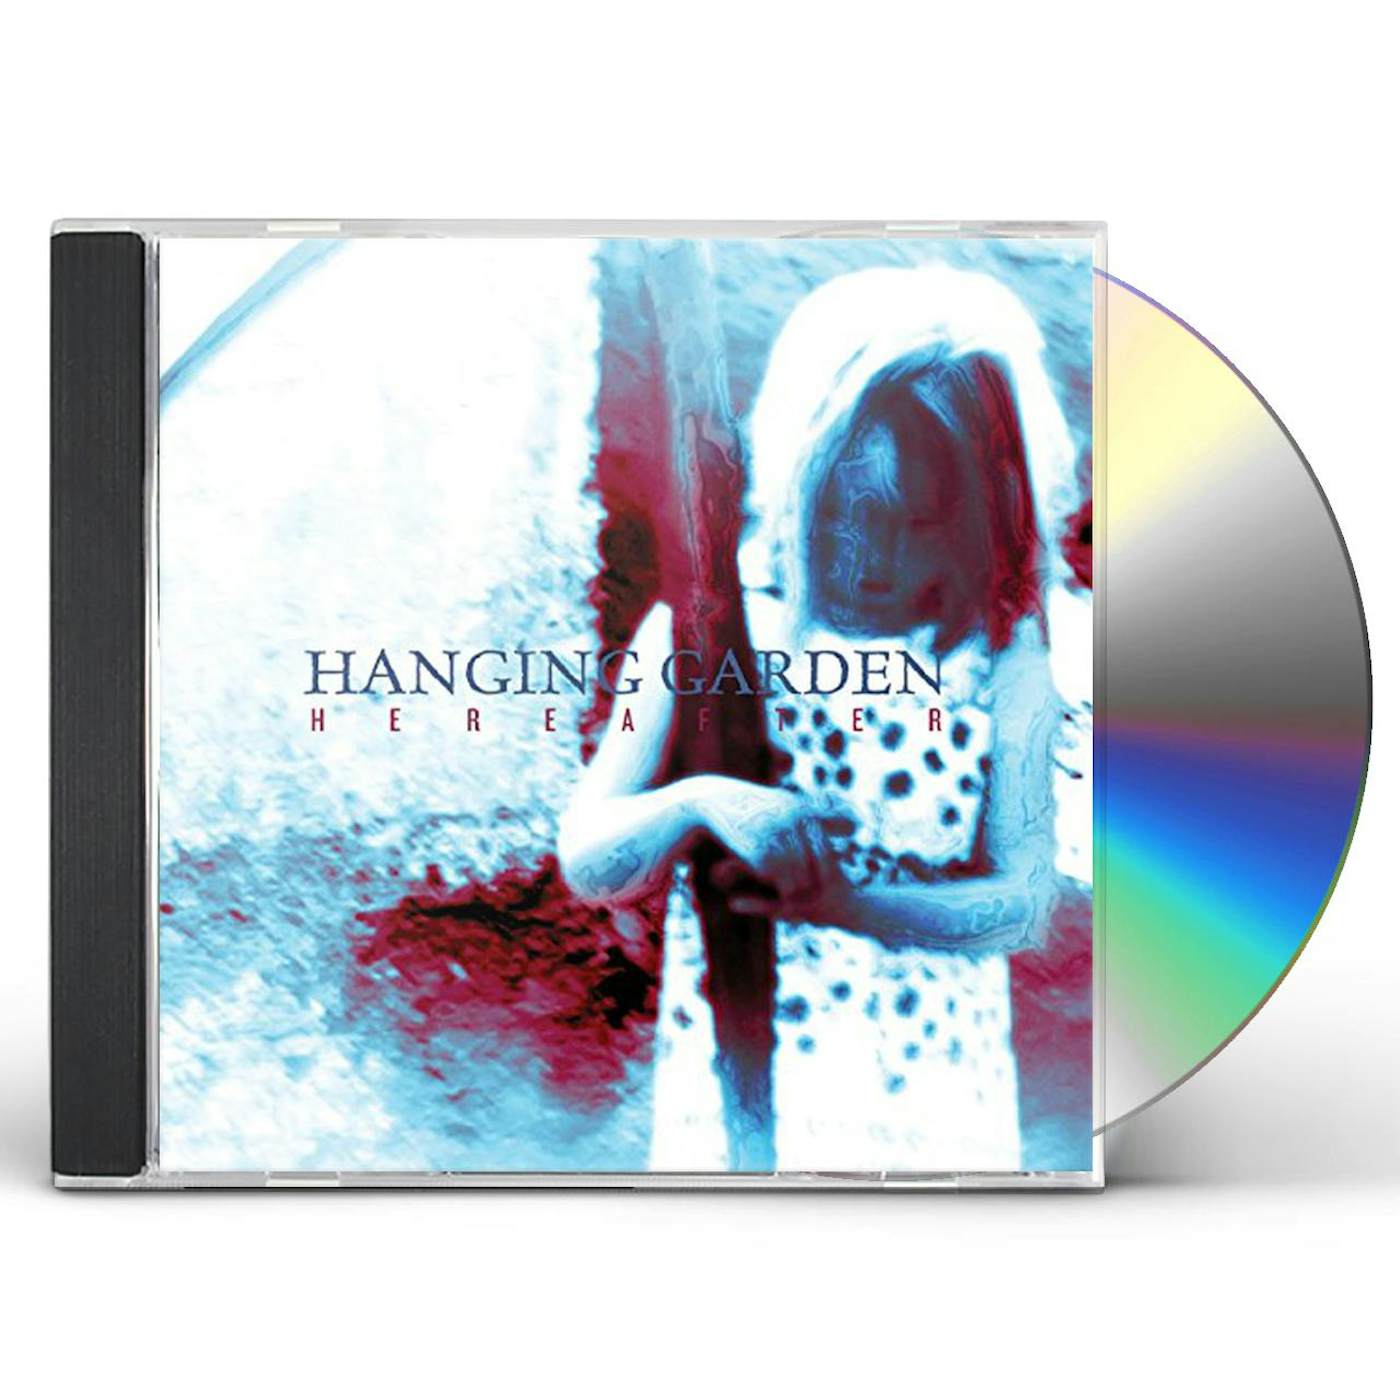 Hanging Garden HEREAFTER CD